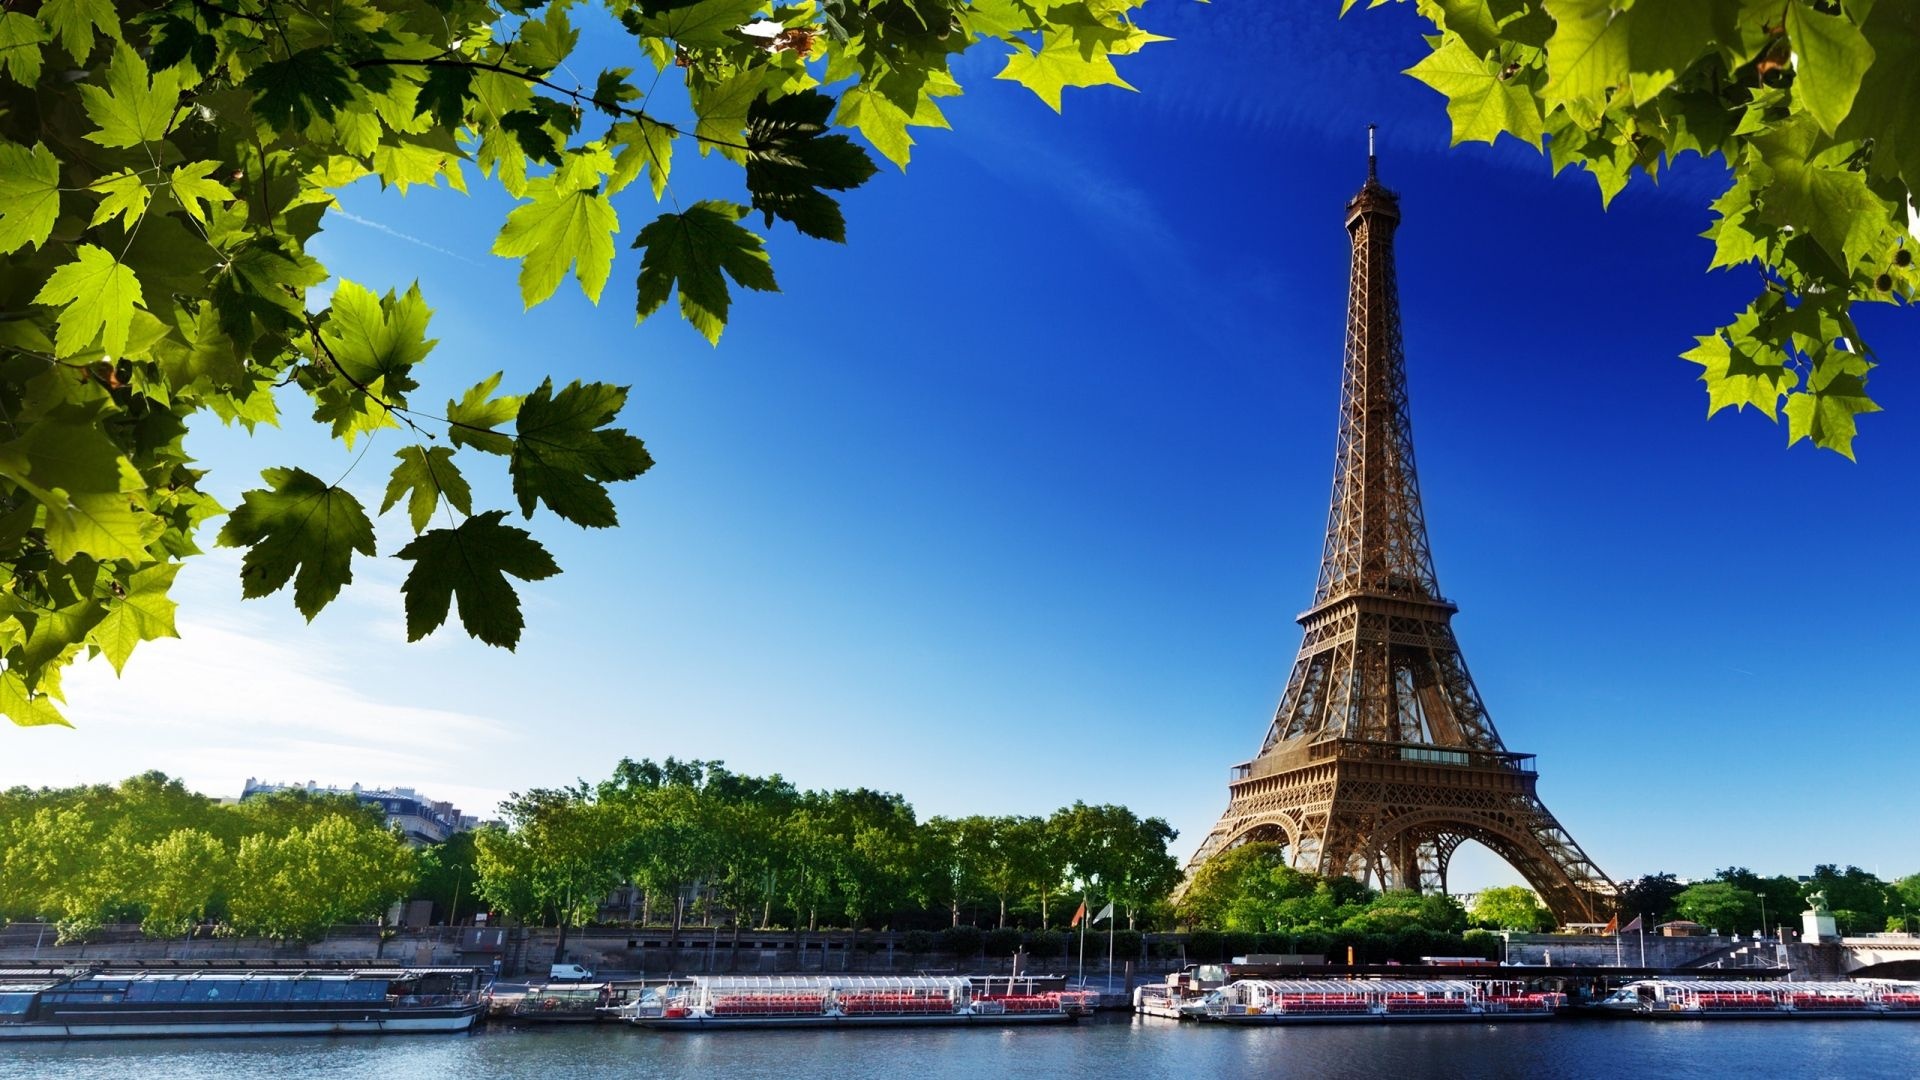 Paris: Eiffel Tower, France, River, Seine. 1920x1080 Full HD Wallpaper.